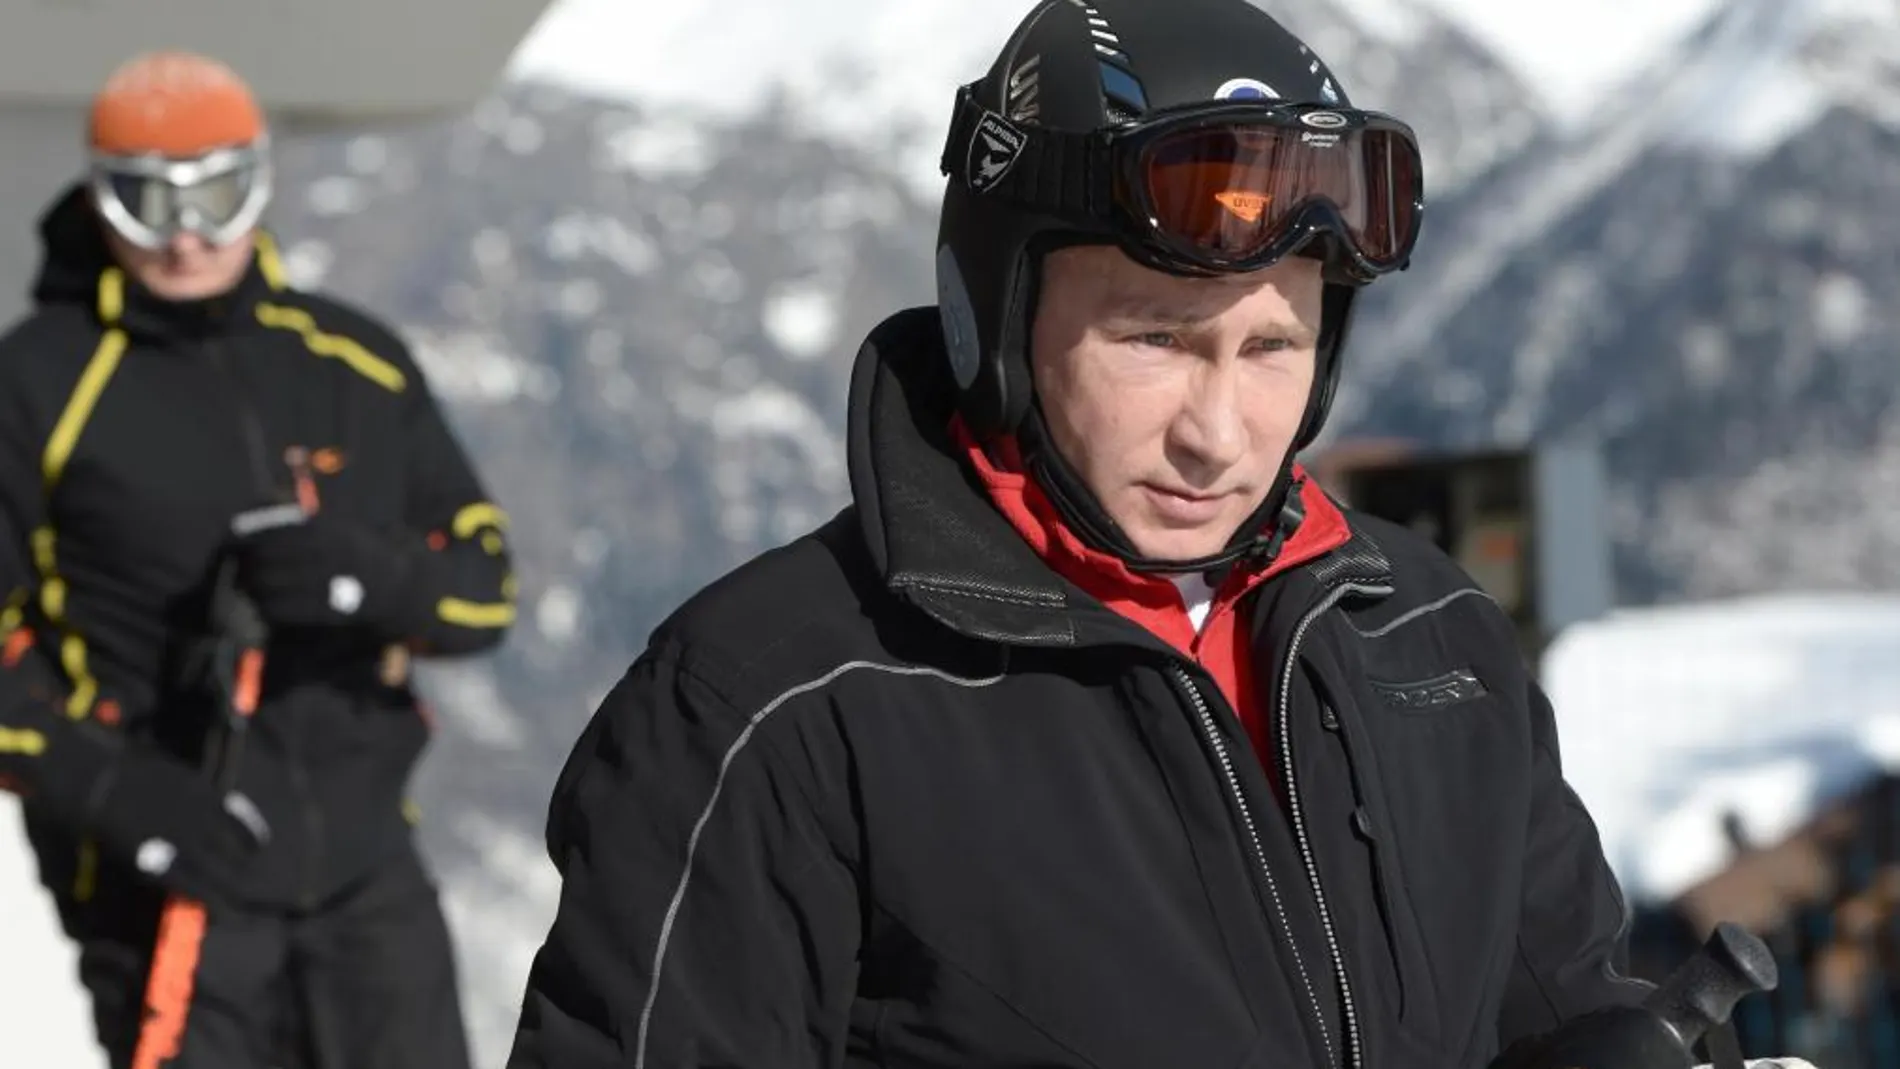 Putin inspeccionará todos los recintos olímpicos "en detalle"durante los próximos días